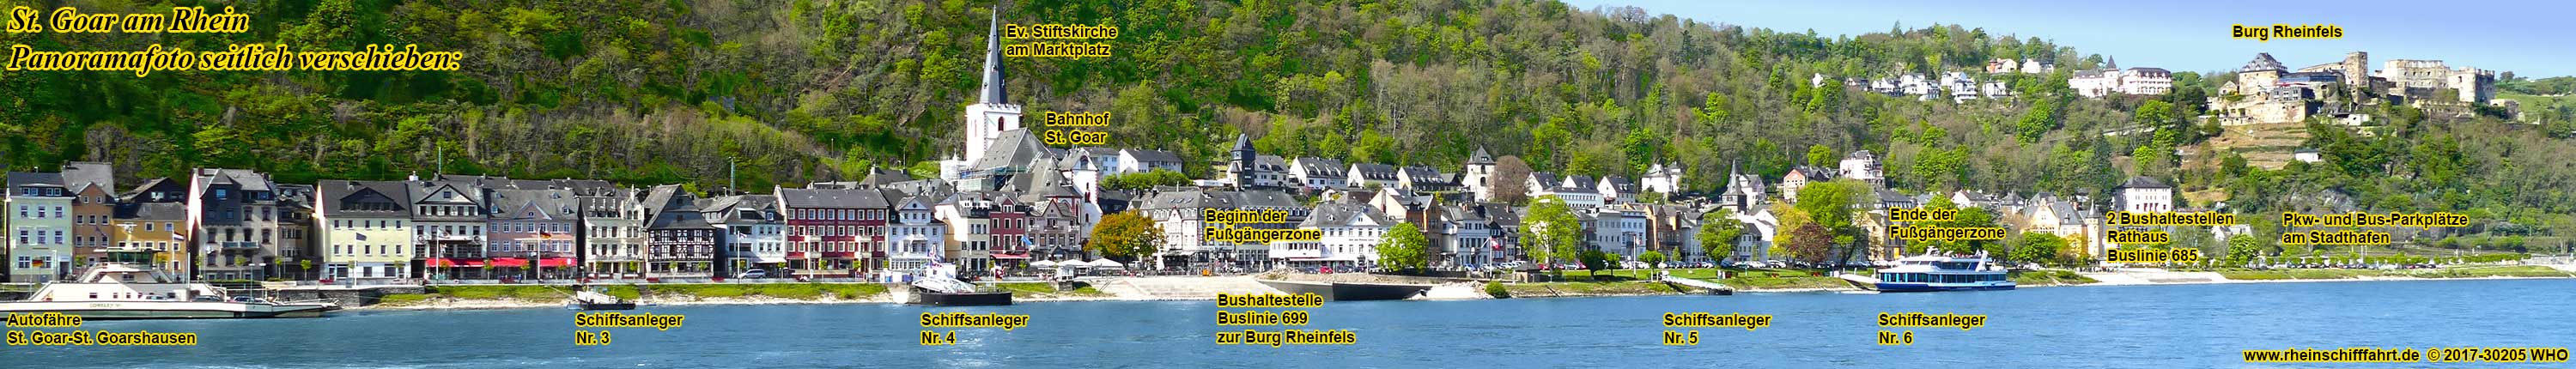 St. Goar am Rhein. Panoramafoto mit Burg Rheinfels und Schiffsanlegern.